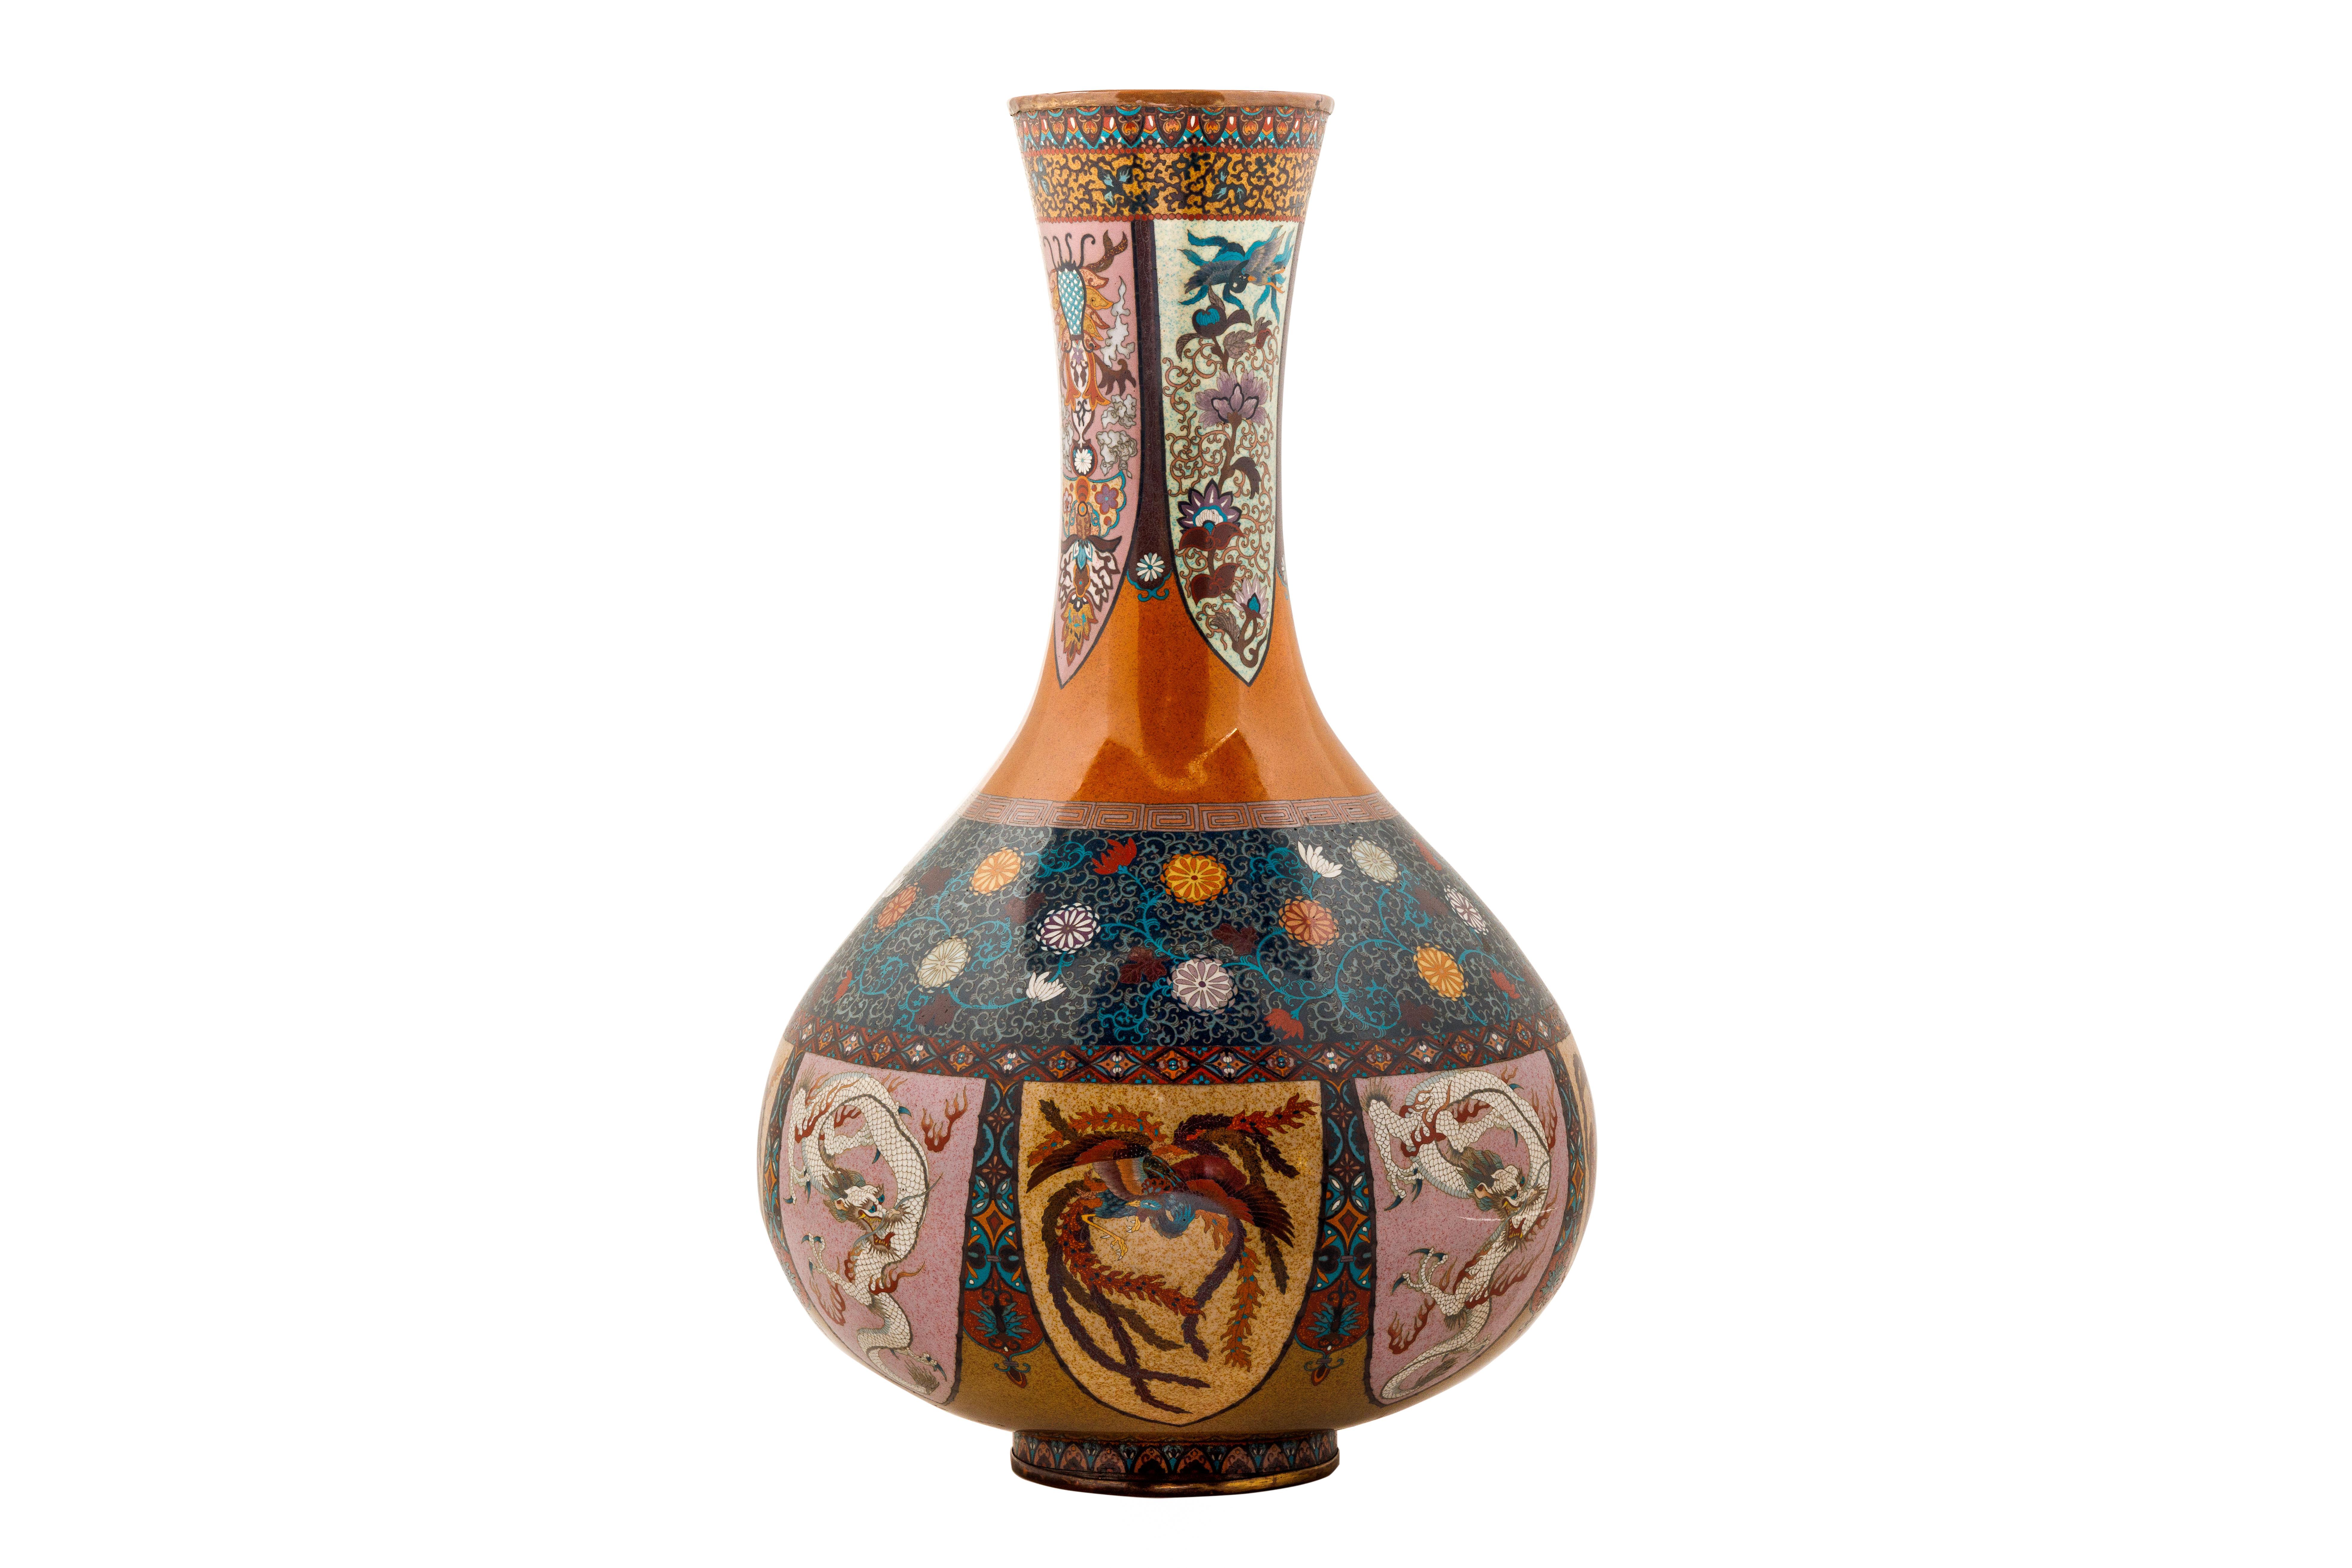 Ein großes Paar japanischer Vasen aus Cloisonne-Emaille, Honda Yasaburo zugeschrieben, 19.

Die Vasen sind mit Vögeln, Phönix, Drachen, Lotus- und Paulownienblüten sowie dem traditionellen japanischen Karakusa-Muster verziert und in den satten